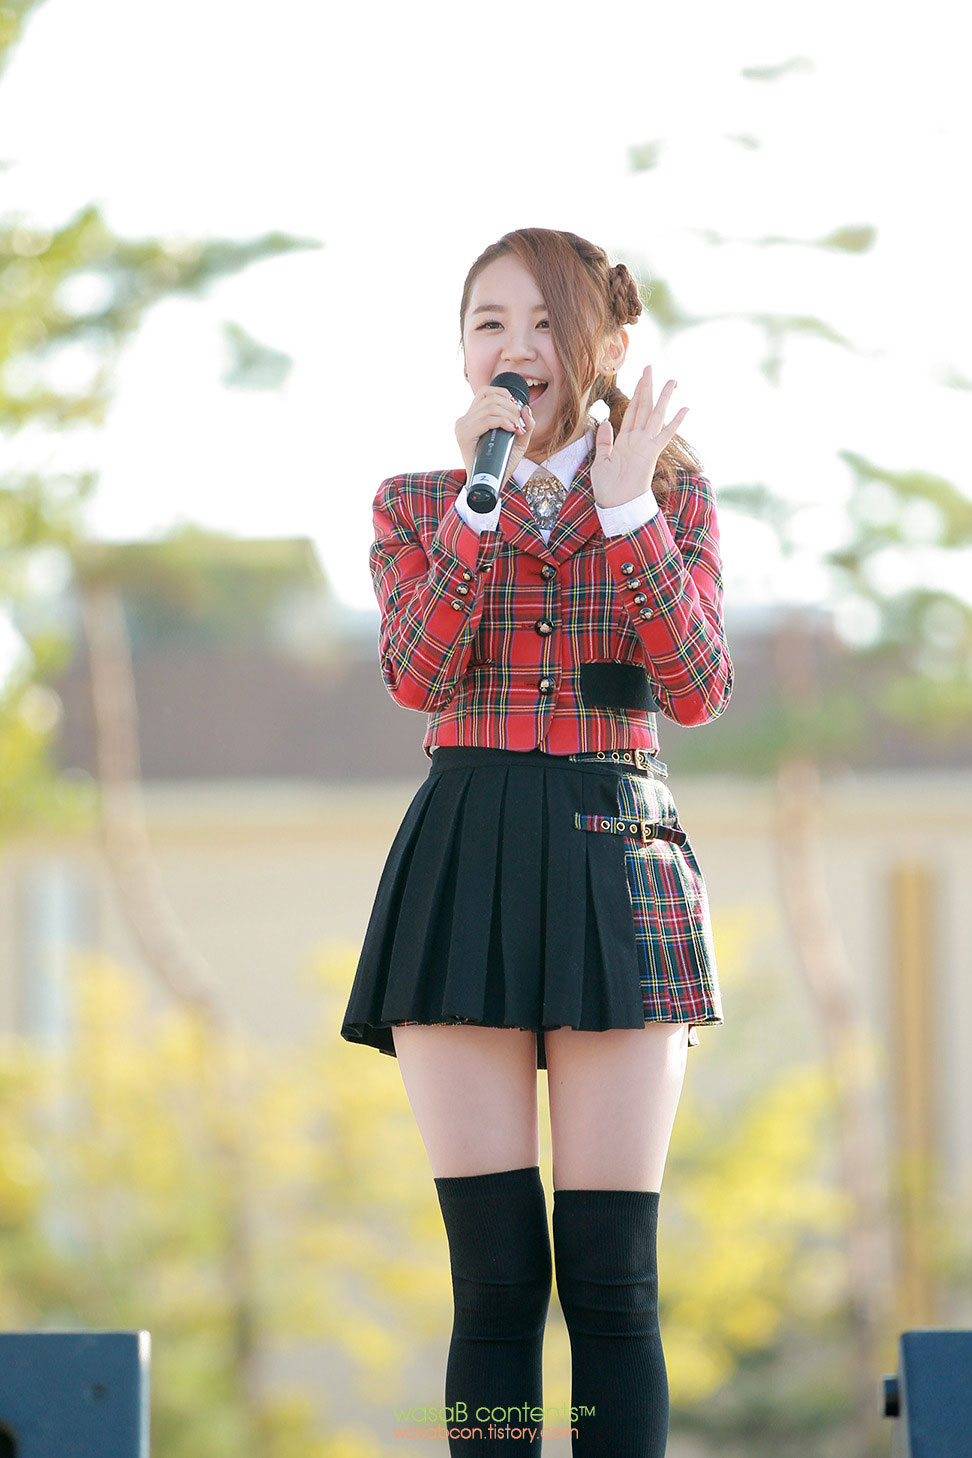 Korean pop idol singer NC.A